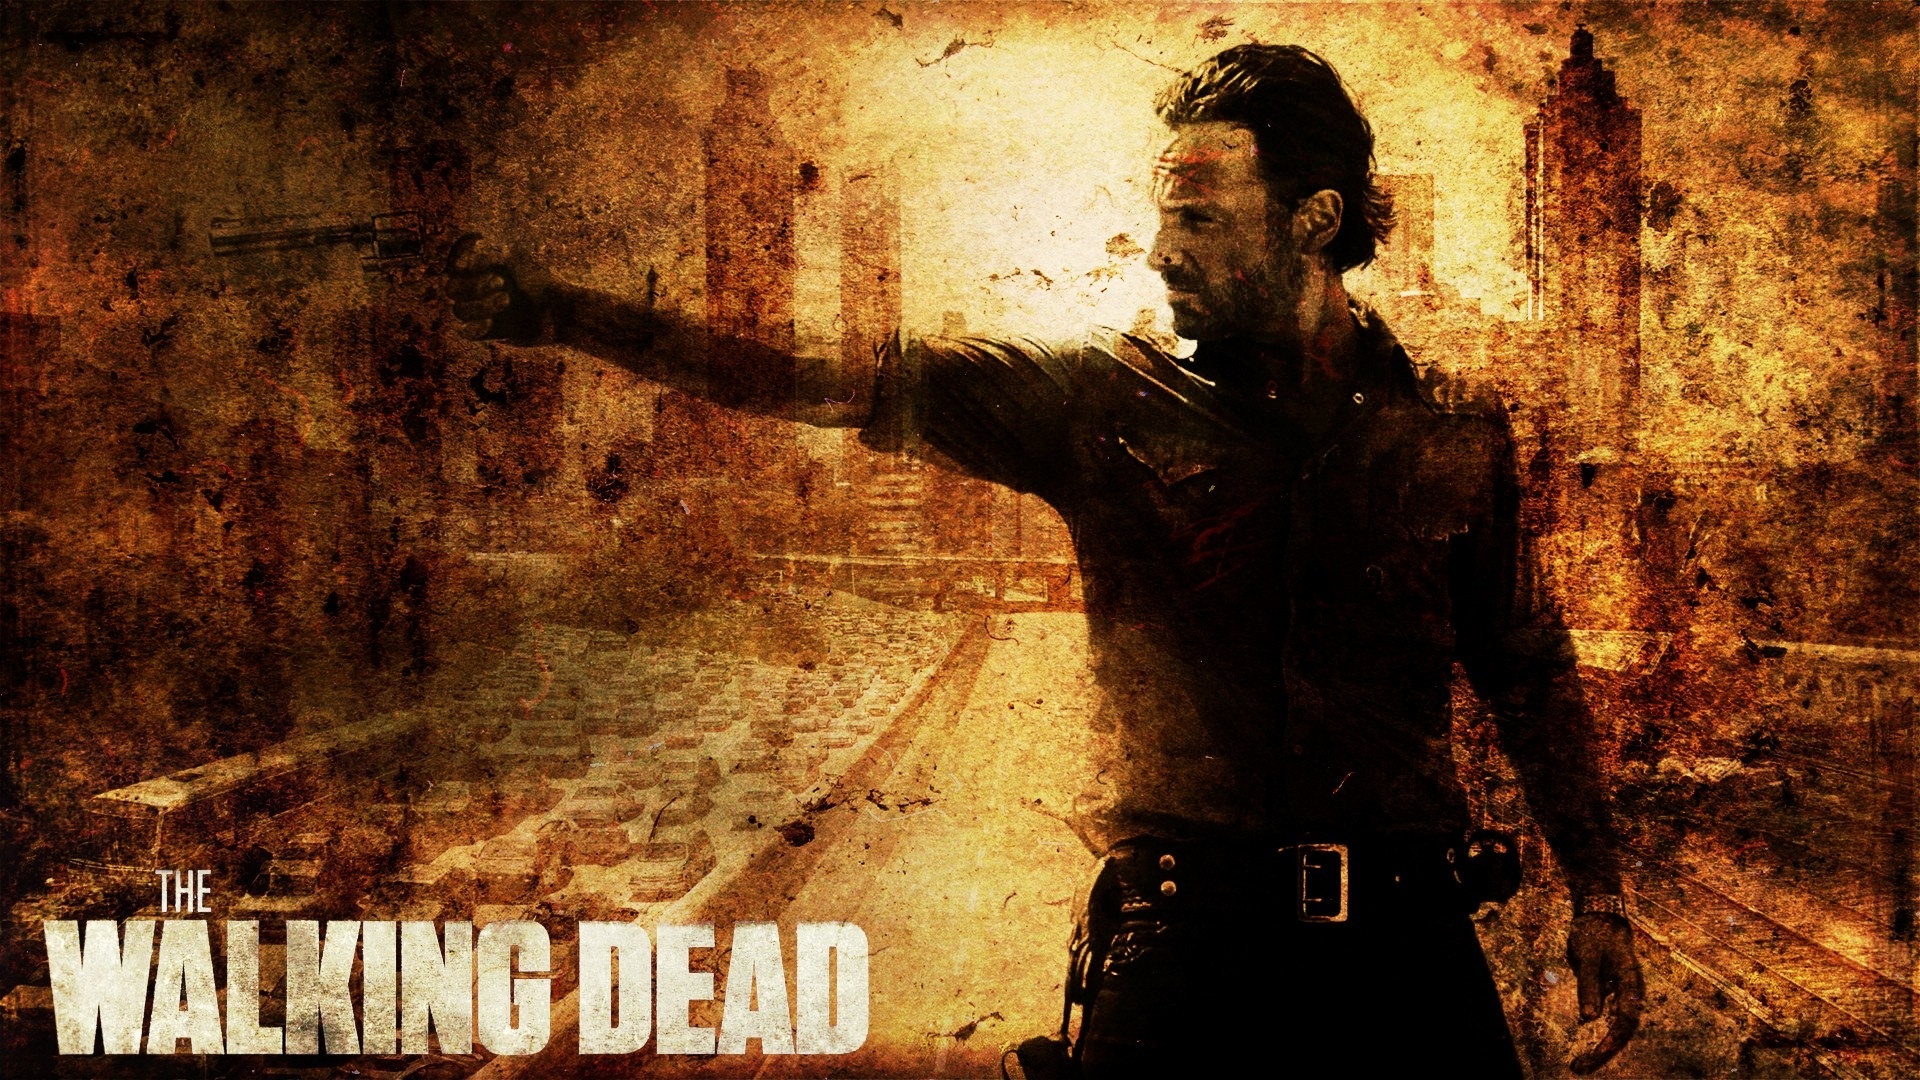 The Walking Dead pc wallpaper